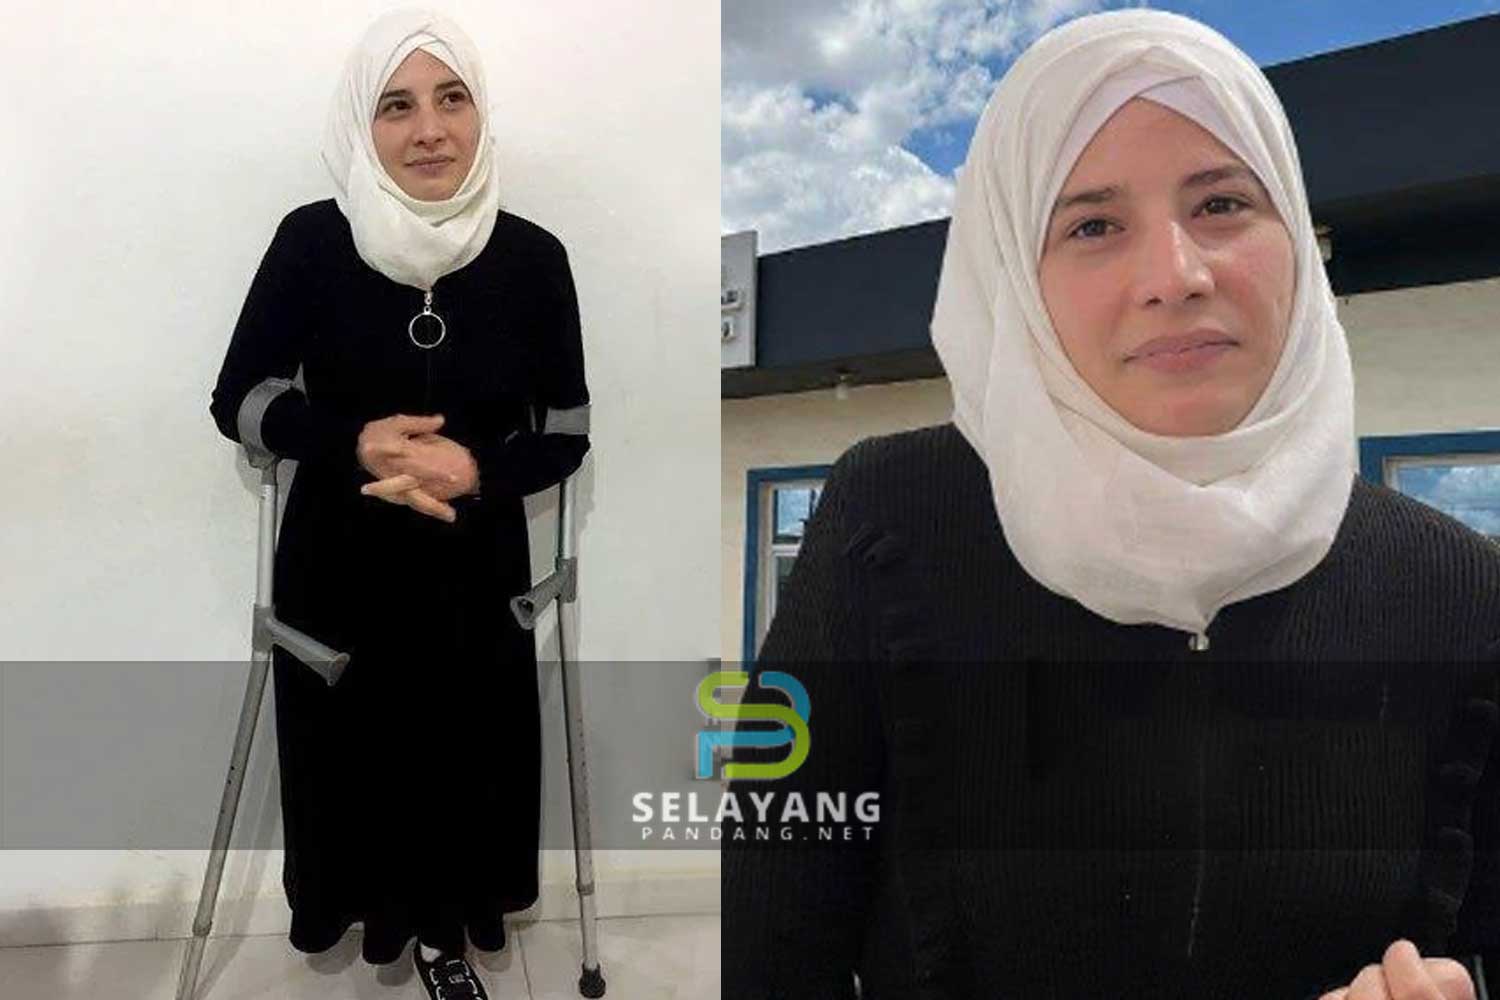 Suami bohong anak bagitahu ibu terkorban dalam serangan bom, rupanya dicerai sebab isteri cacat hilang kaki paras peha